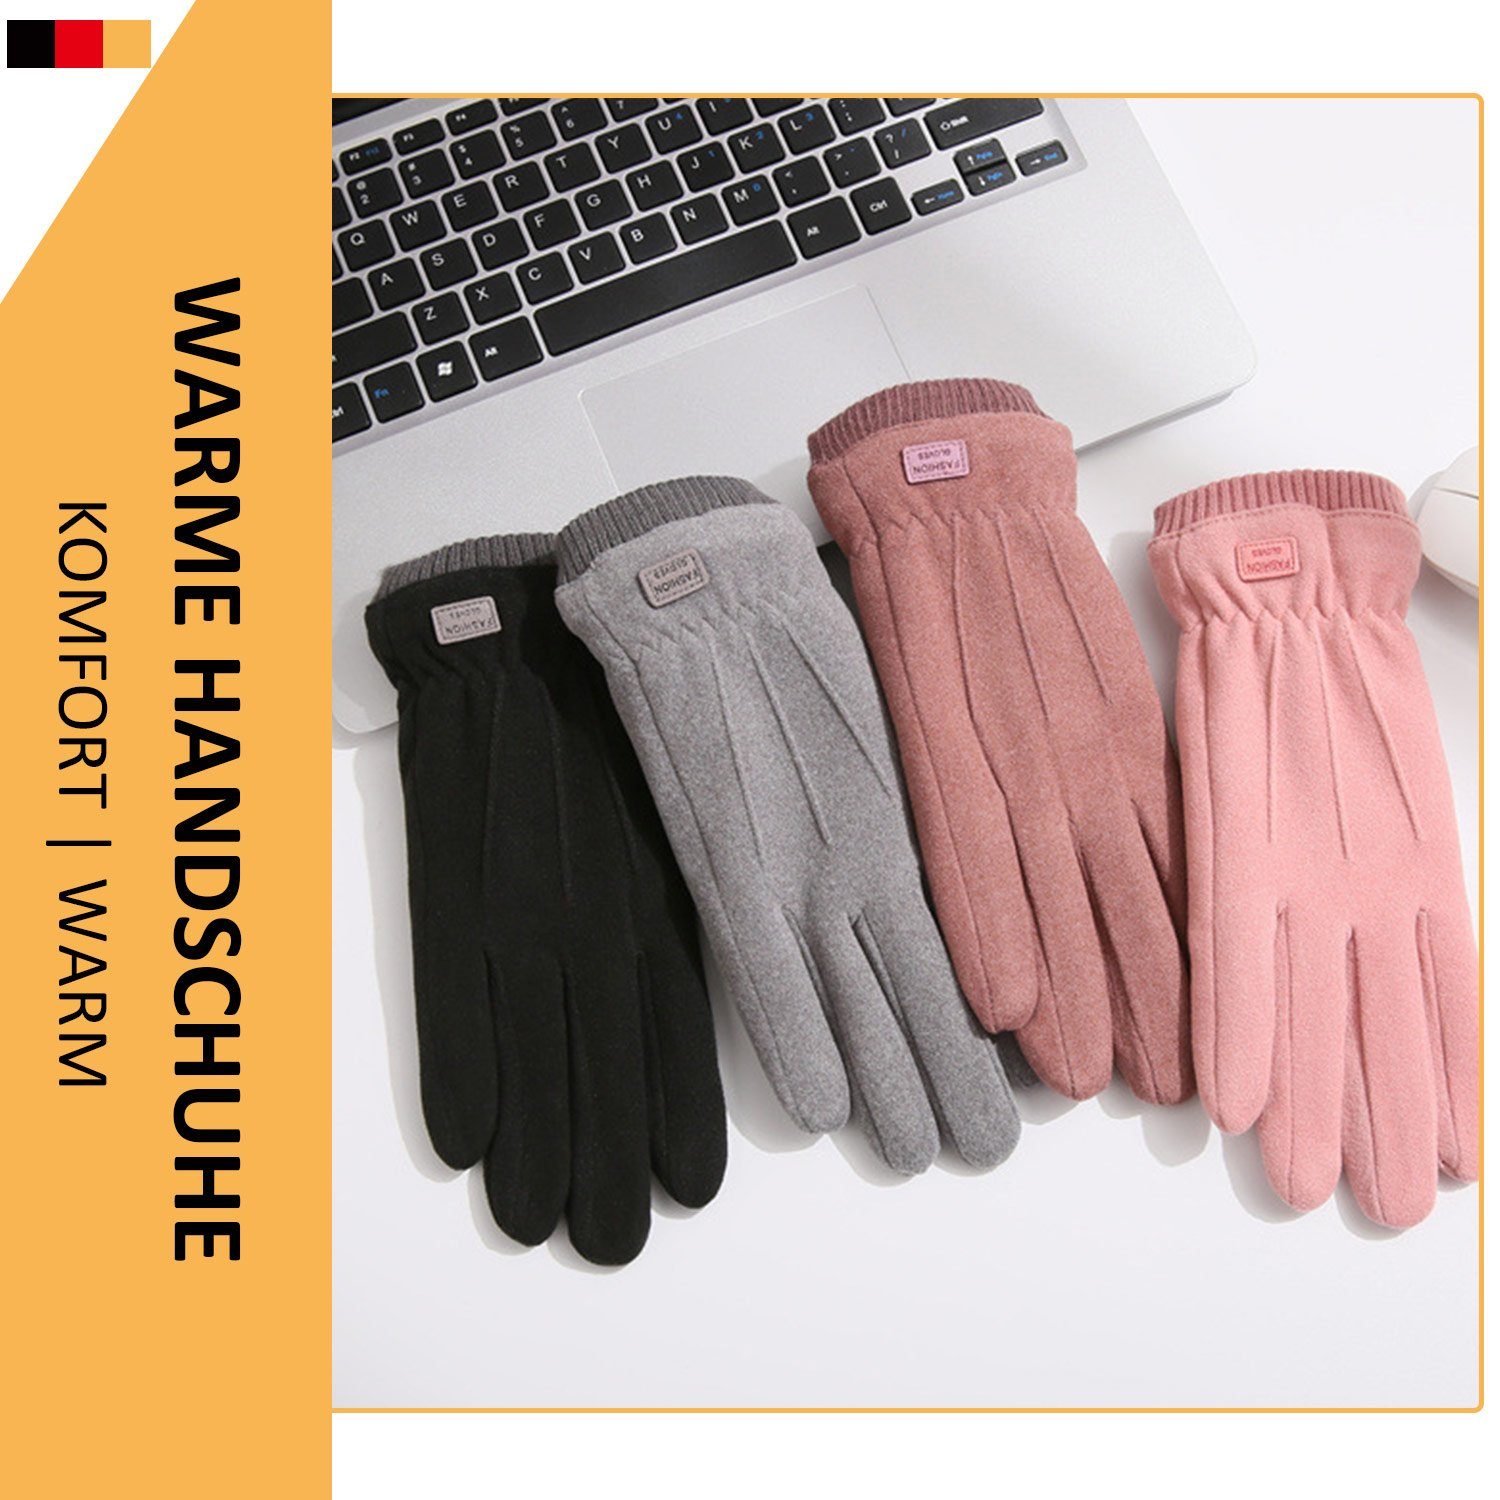 MAGICSHE Fleecehandschuhe Damen Touchscreen Winter Bohnensand Warm Handschuhe